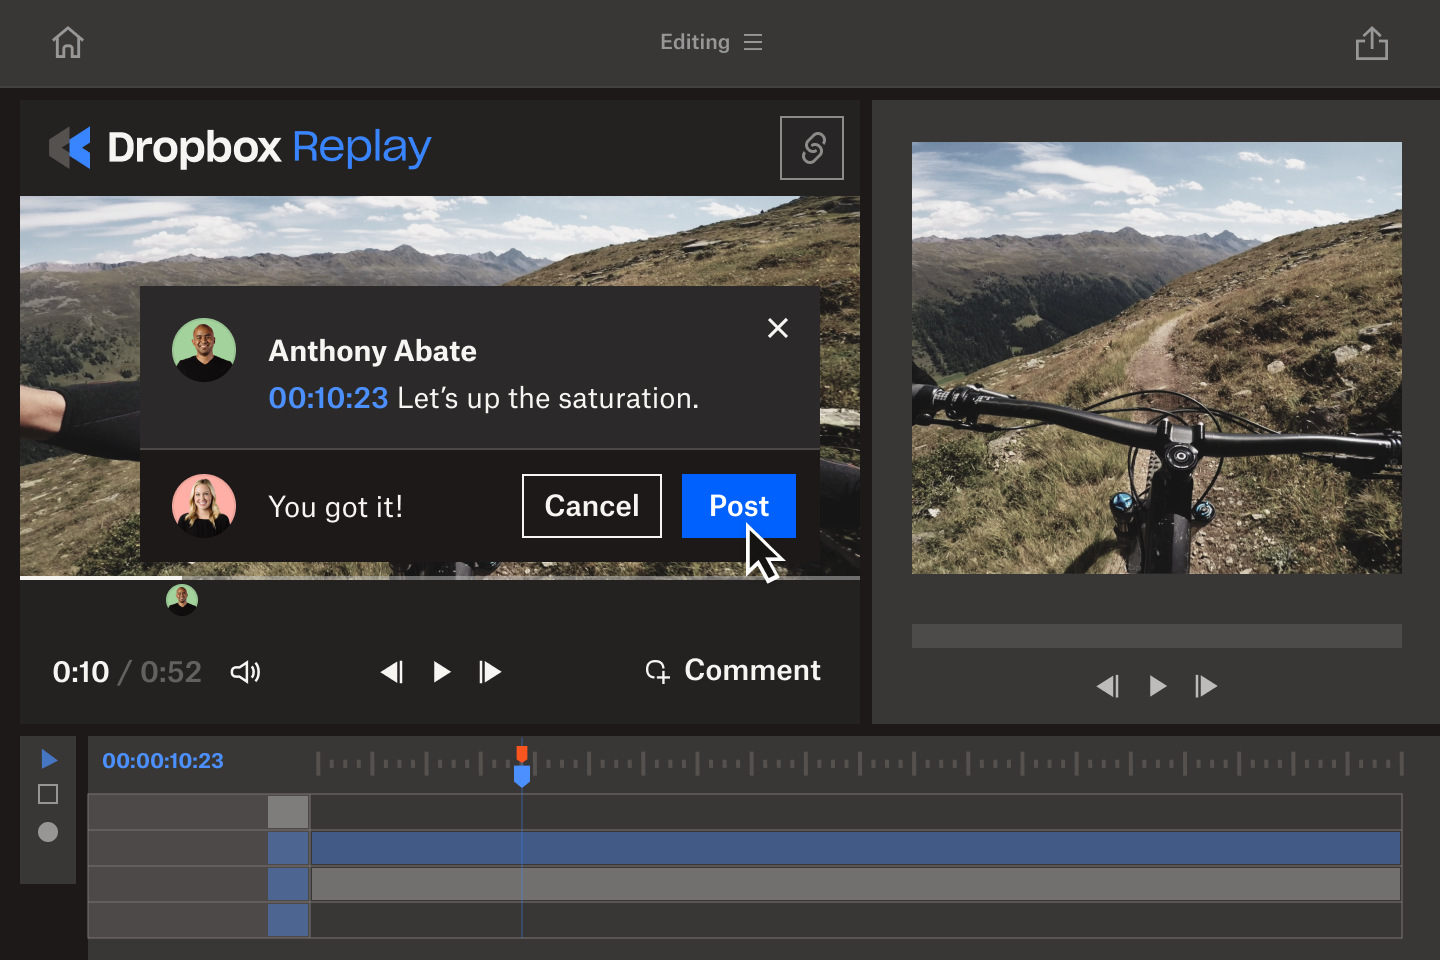 Las notas de fotogramas concretos de Dropbox Replay facilitan la colaboración en proyectos de vídeo.